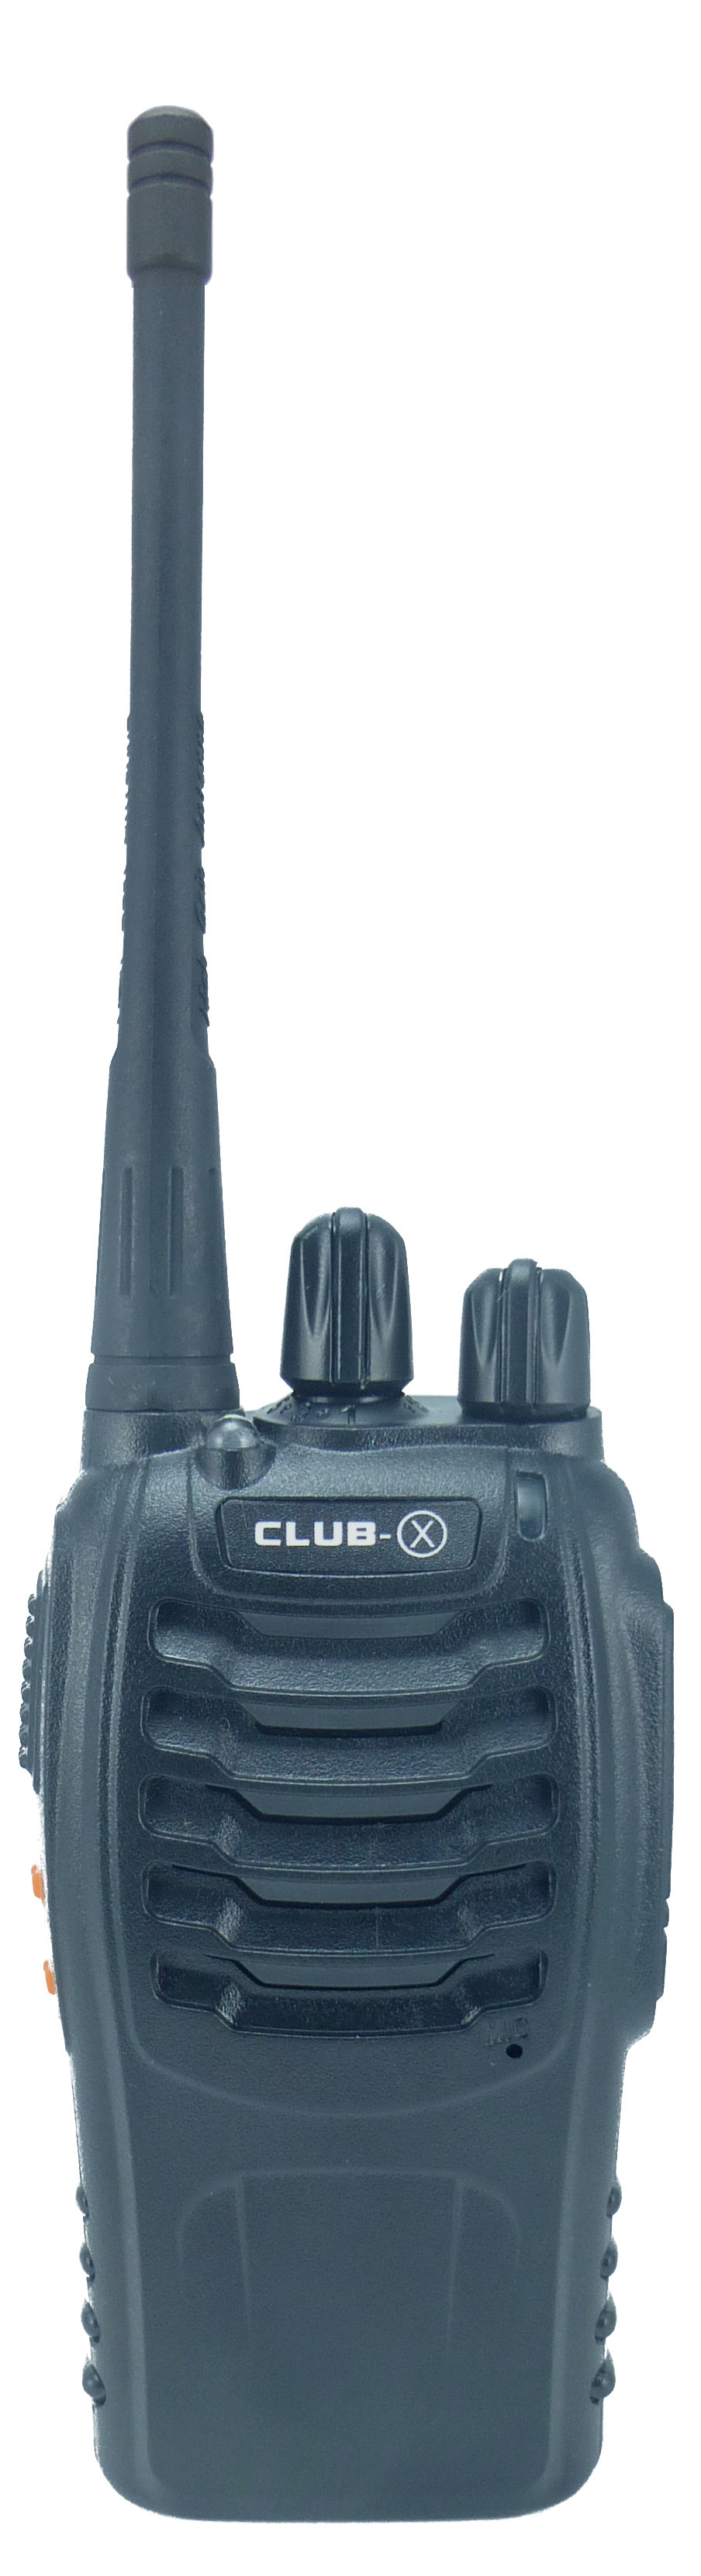 Club small portable radio